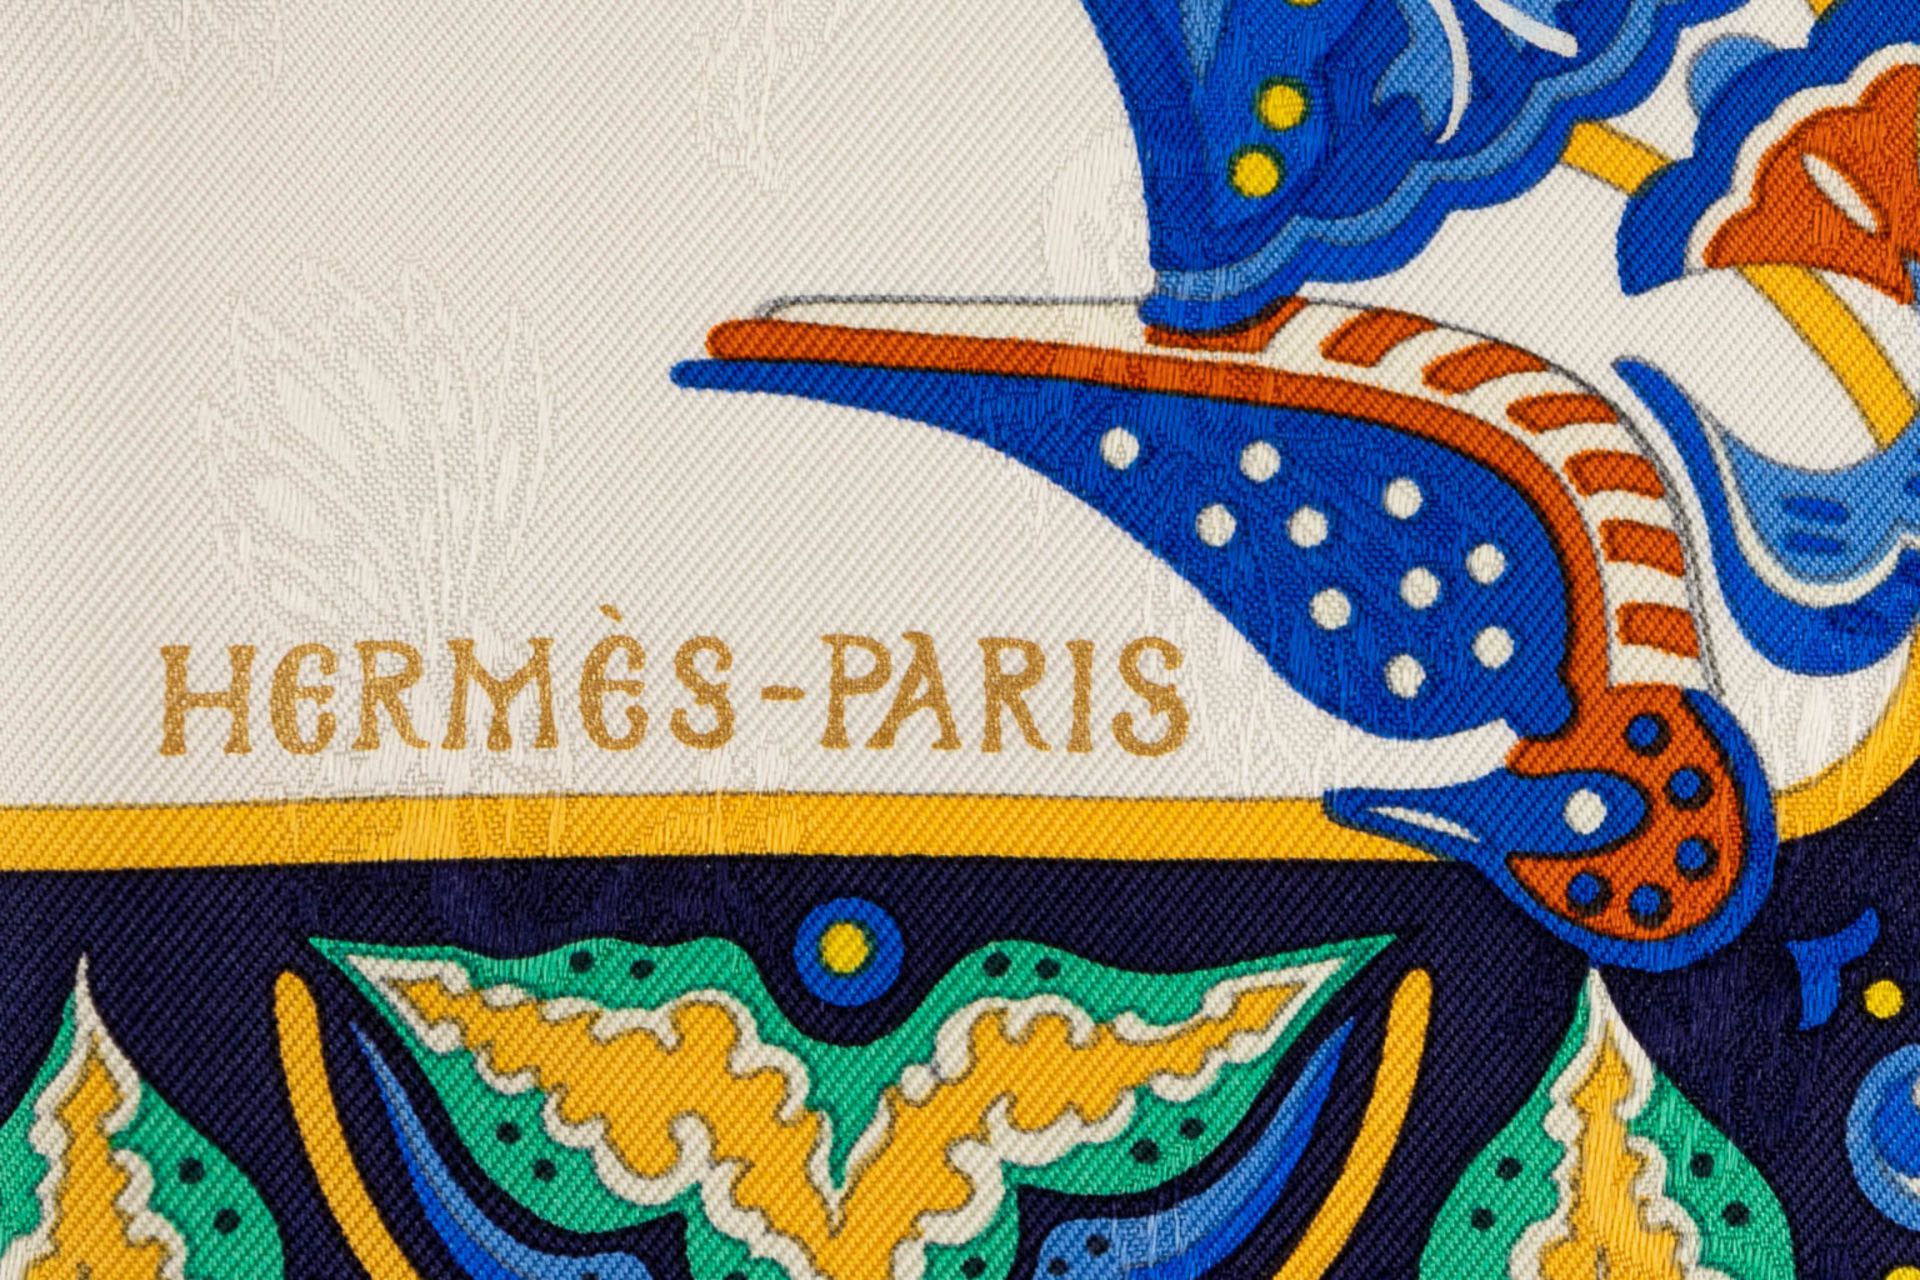 Hermès Paris, a set of 2 silk scarfs. (W:90 x H:90 cm) - Bild 6 aus 22